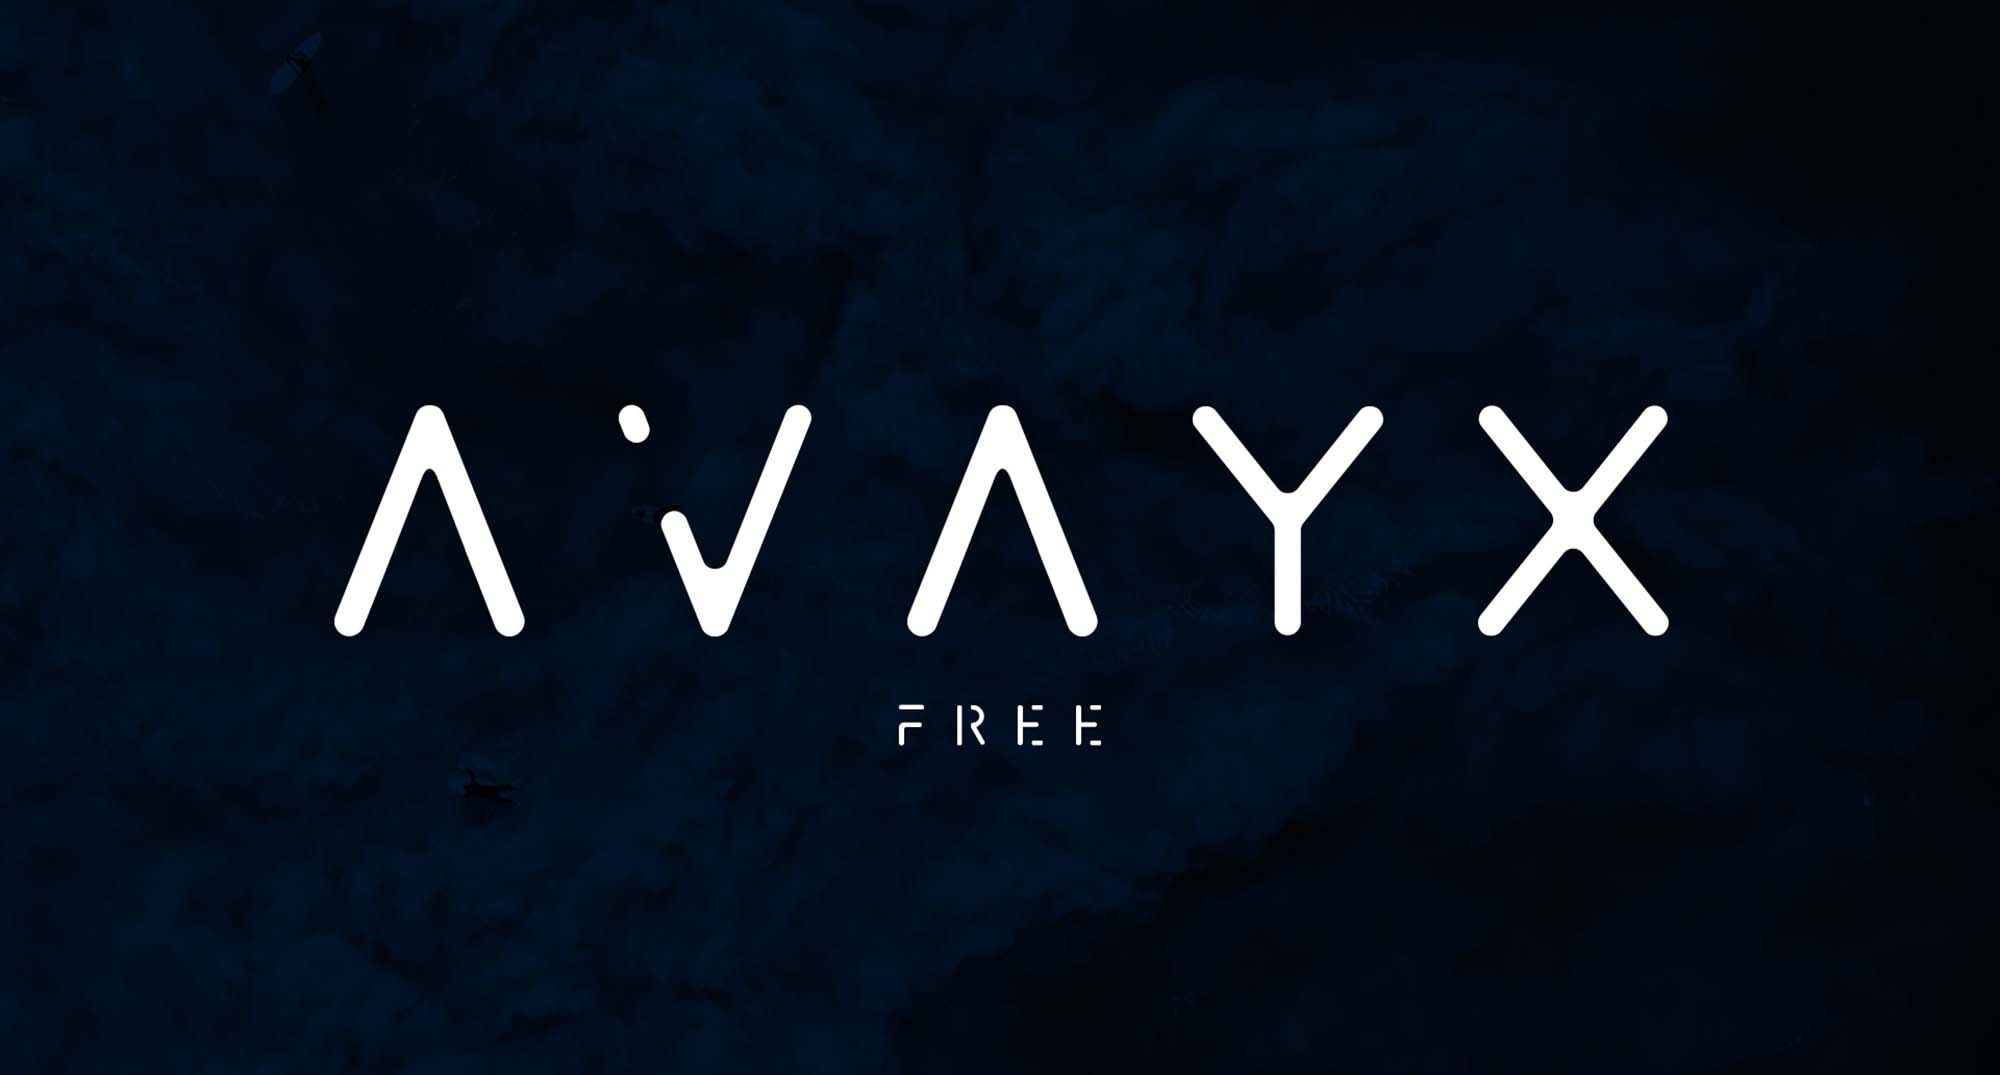 Avayx Font